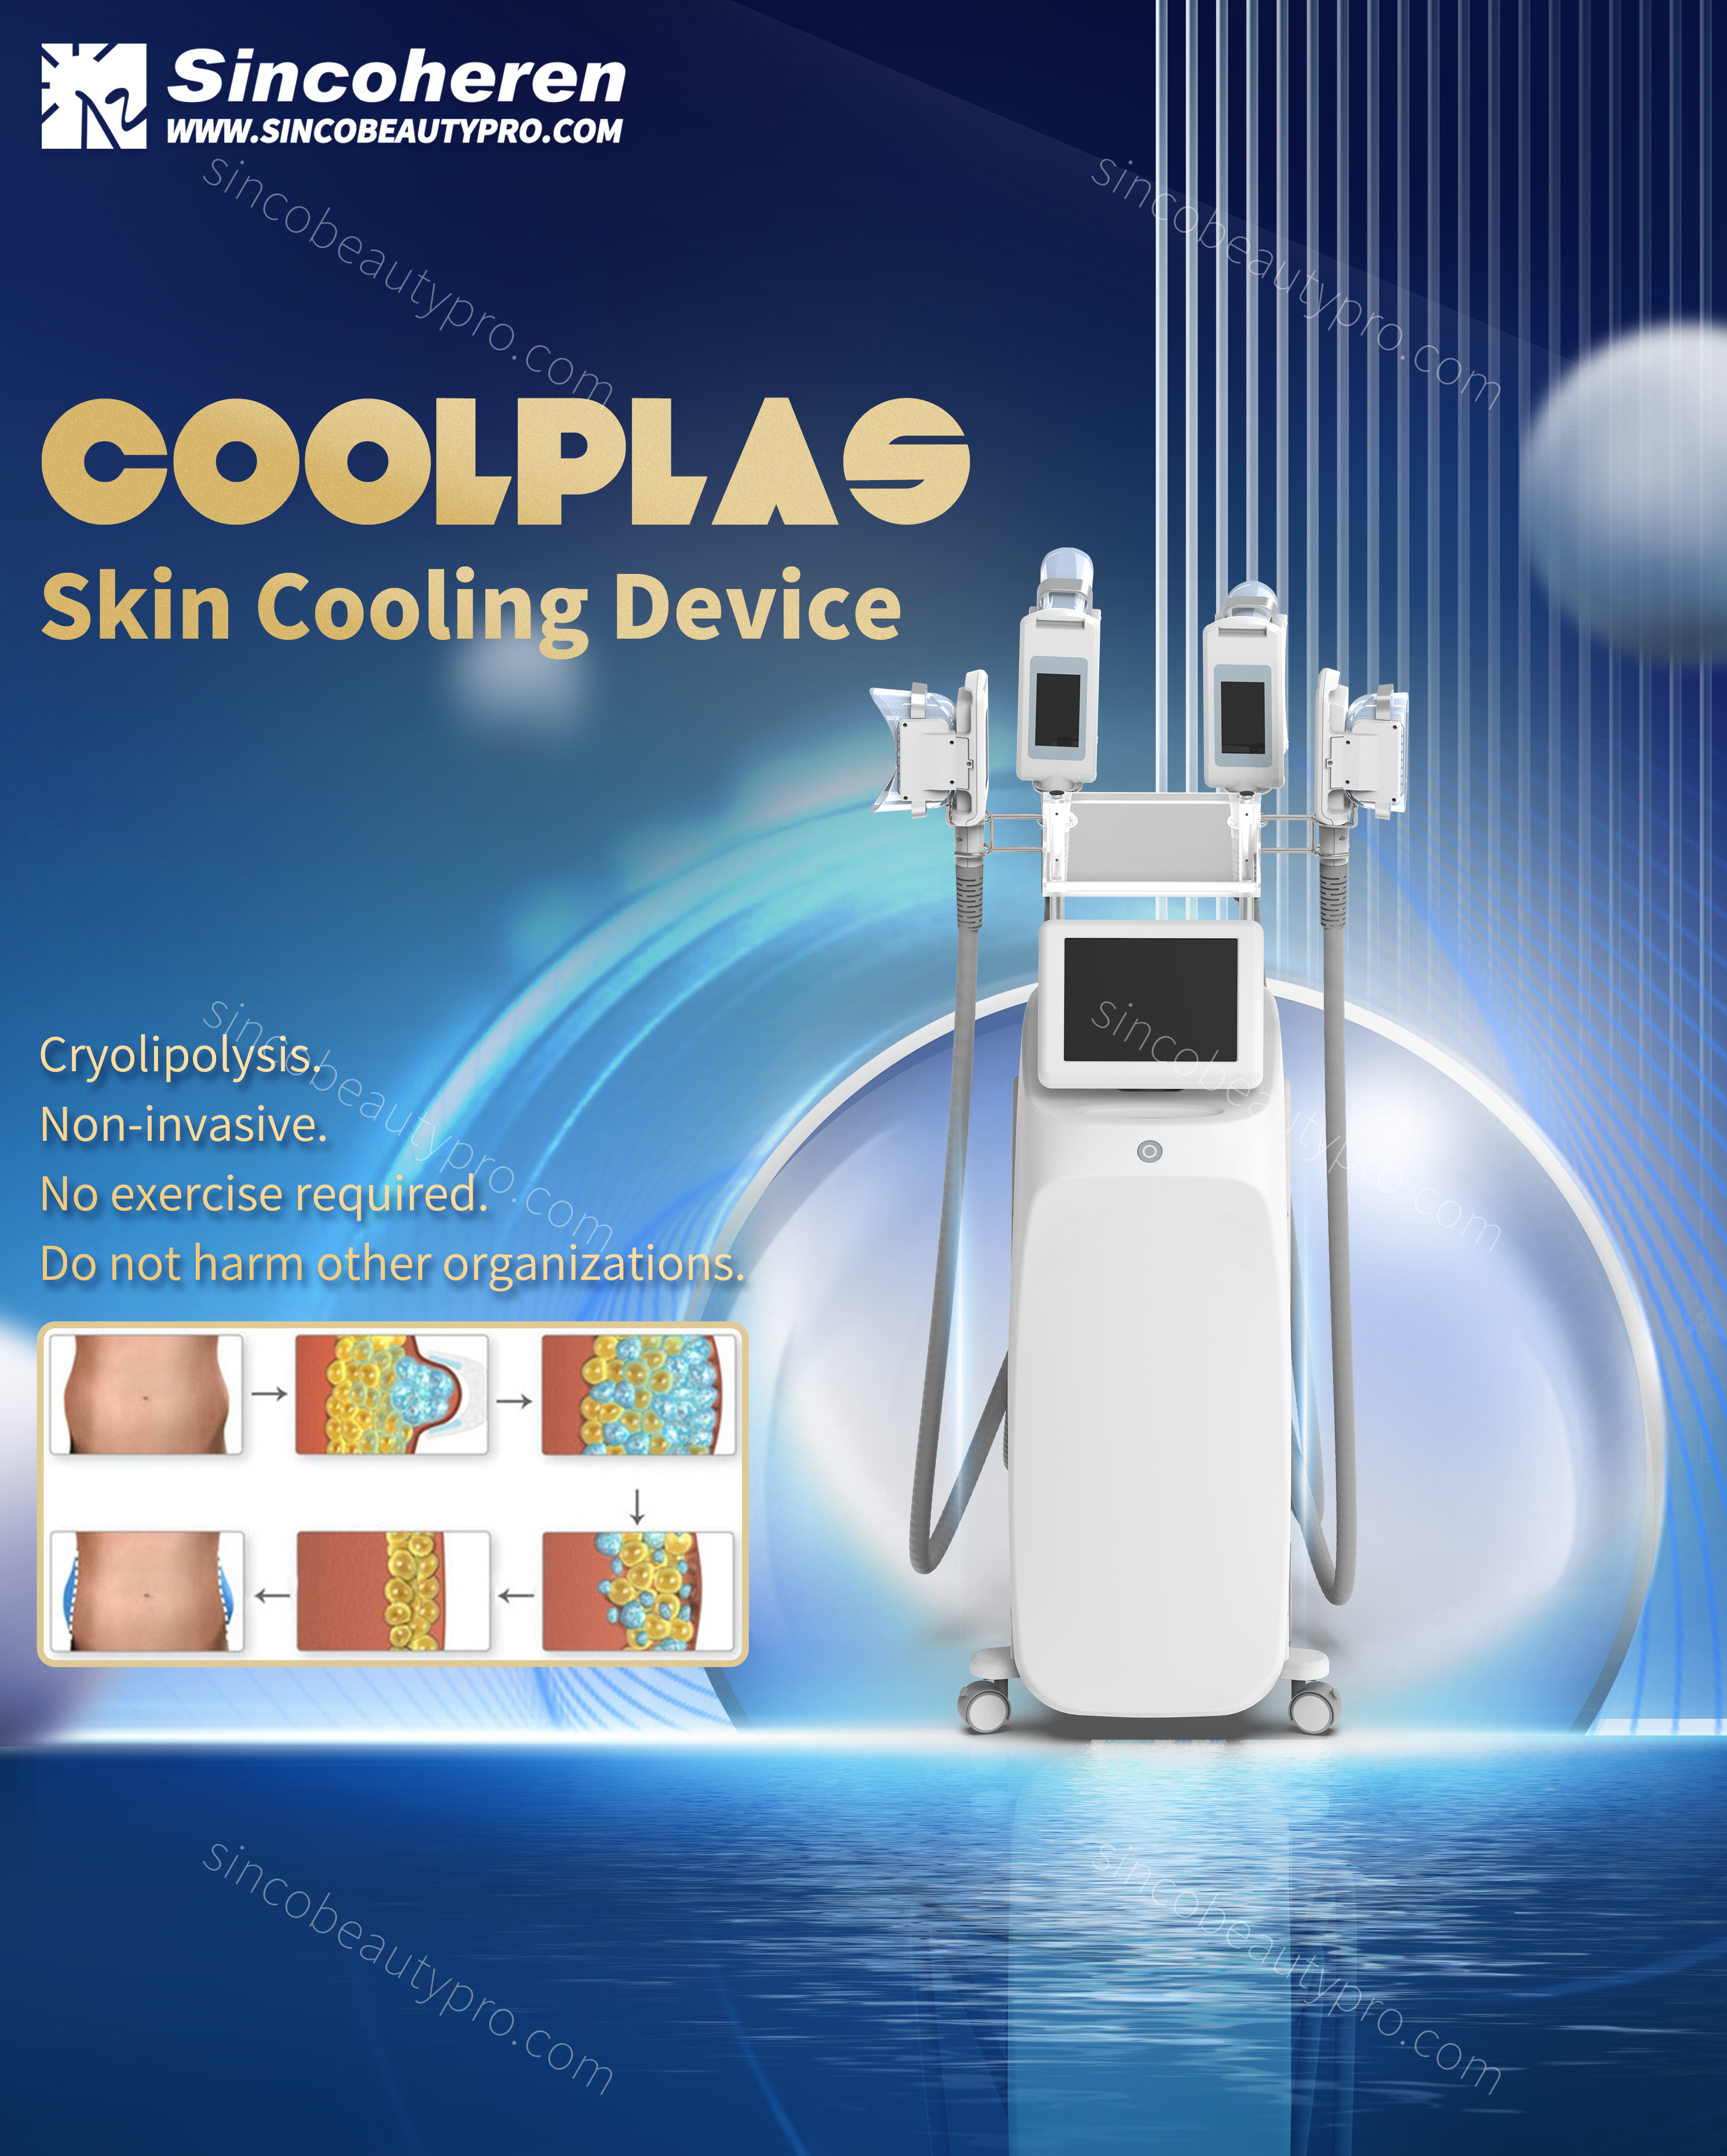 Coolplas машин 4 бариулын шинэ загвар нь тусдаа удирдлагатай, илүү үр ашигтай